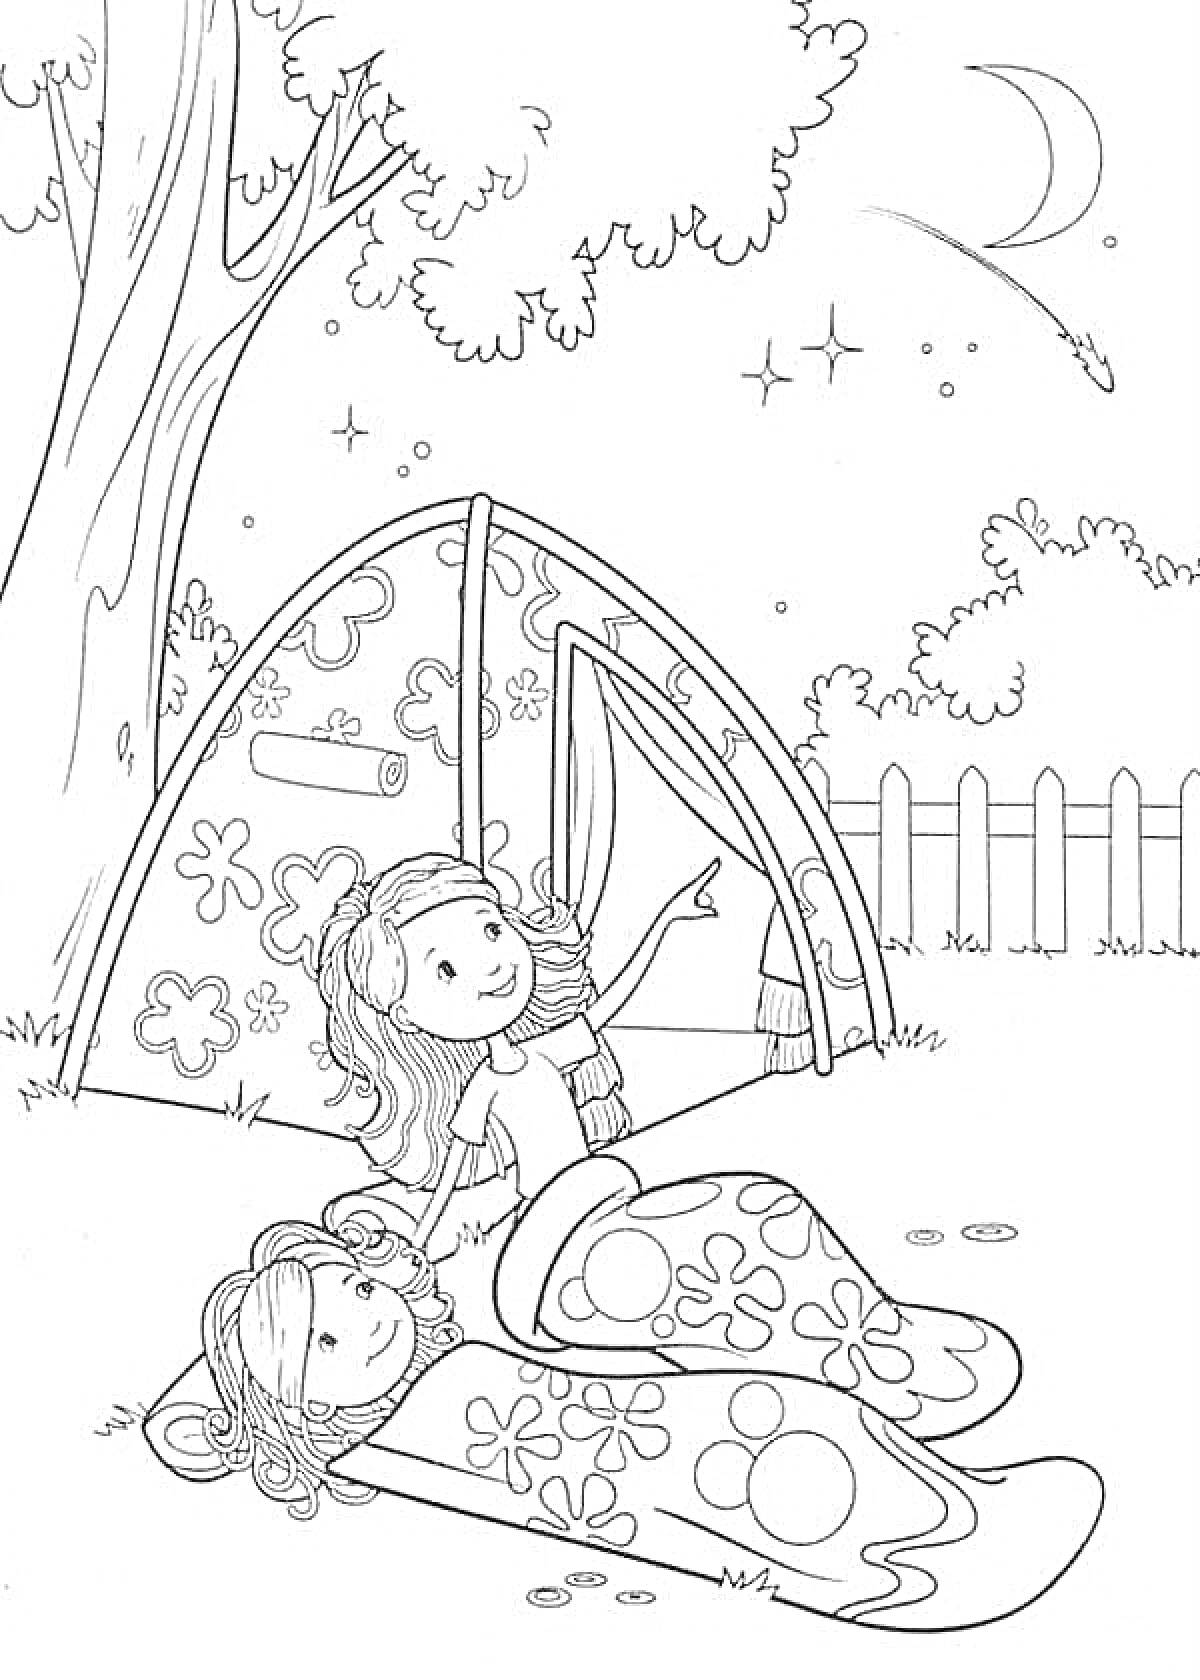 Раскраска Две девочки у палатки под звездами, одна показывает на падающую звезду, обе в спальных мешках, дерево, забор и луна на заднем плане